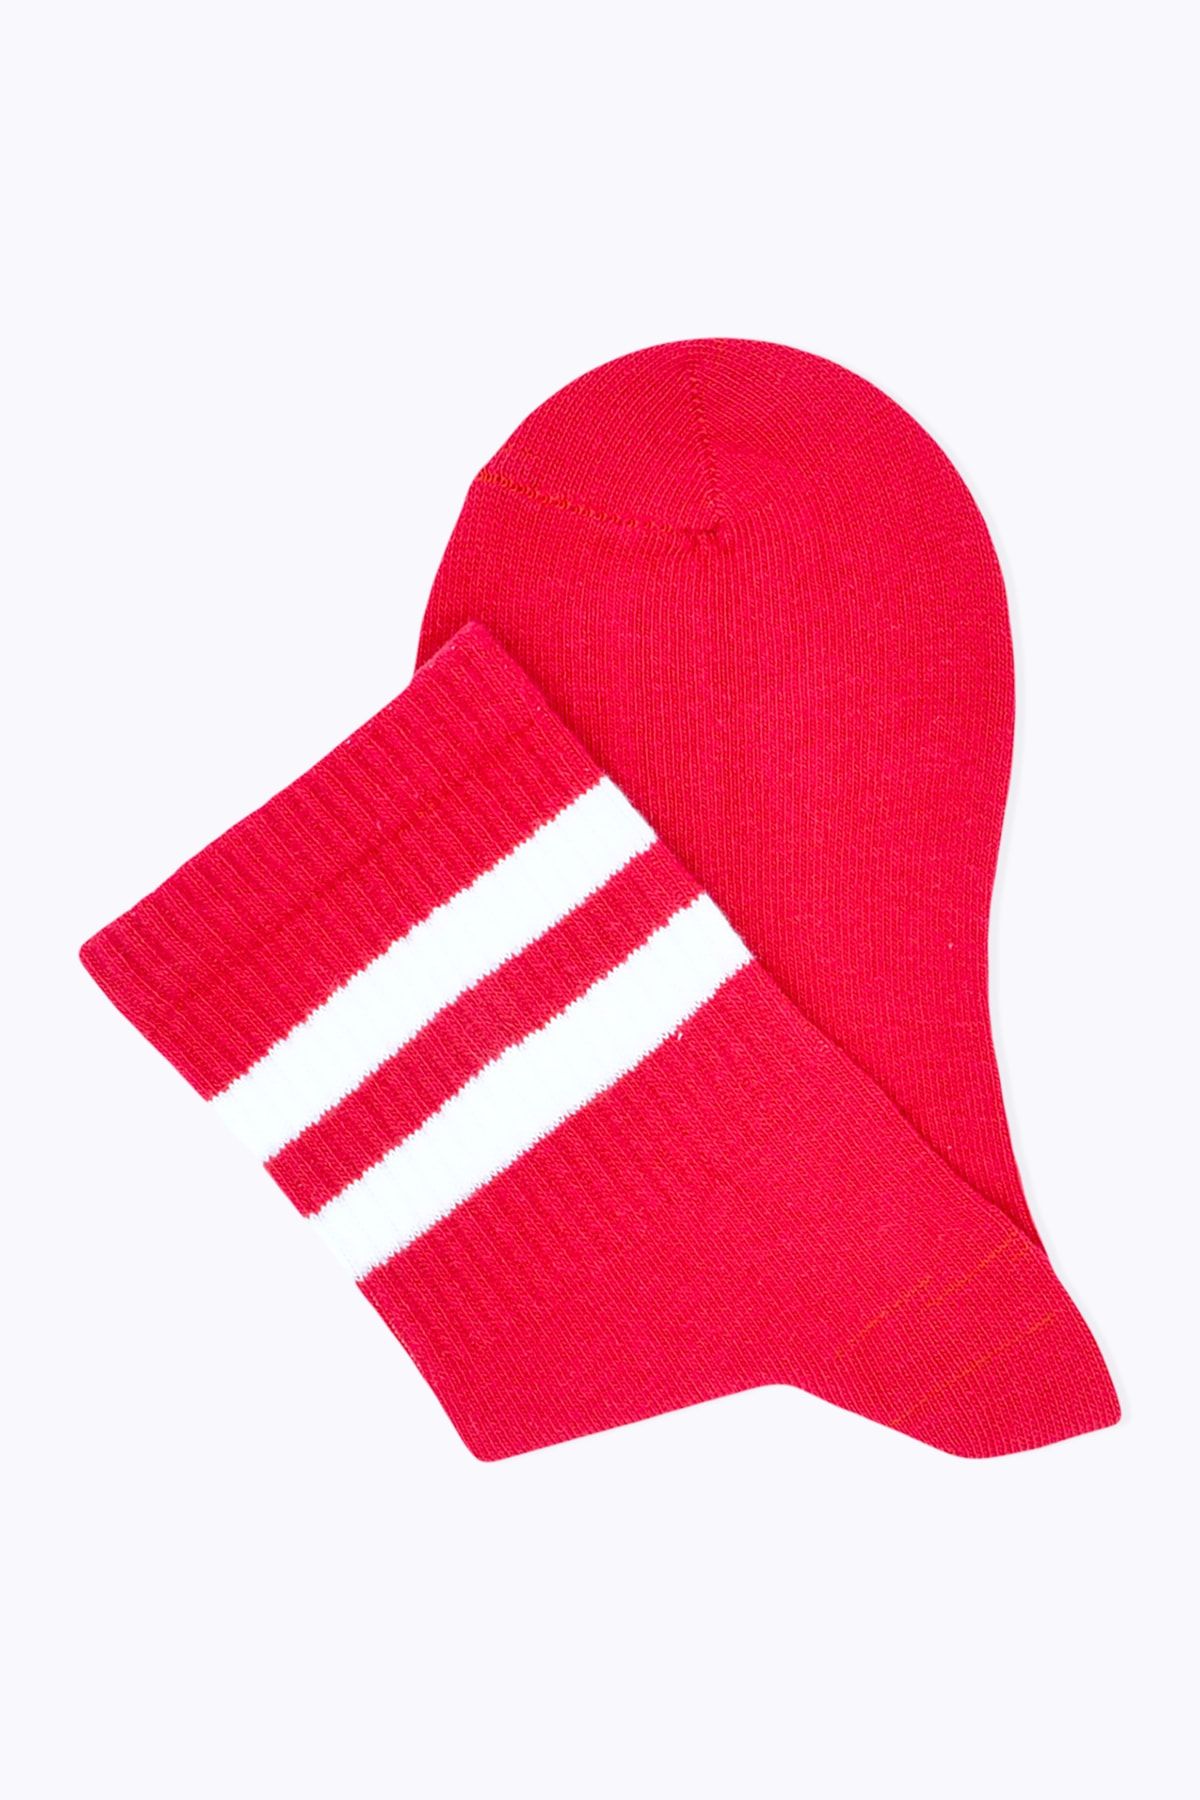 Socks Academy Beyaz Çizgili Kırmızı Çorap